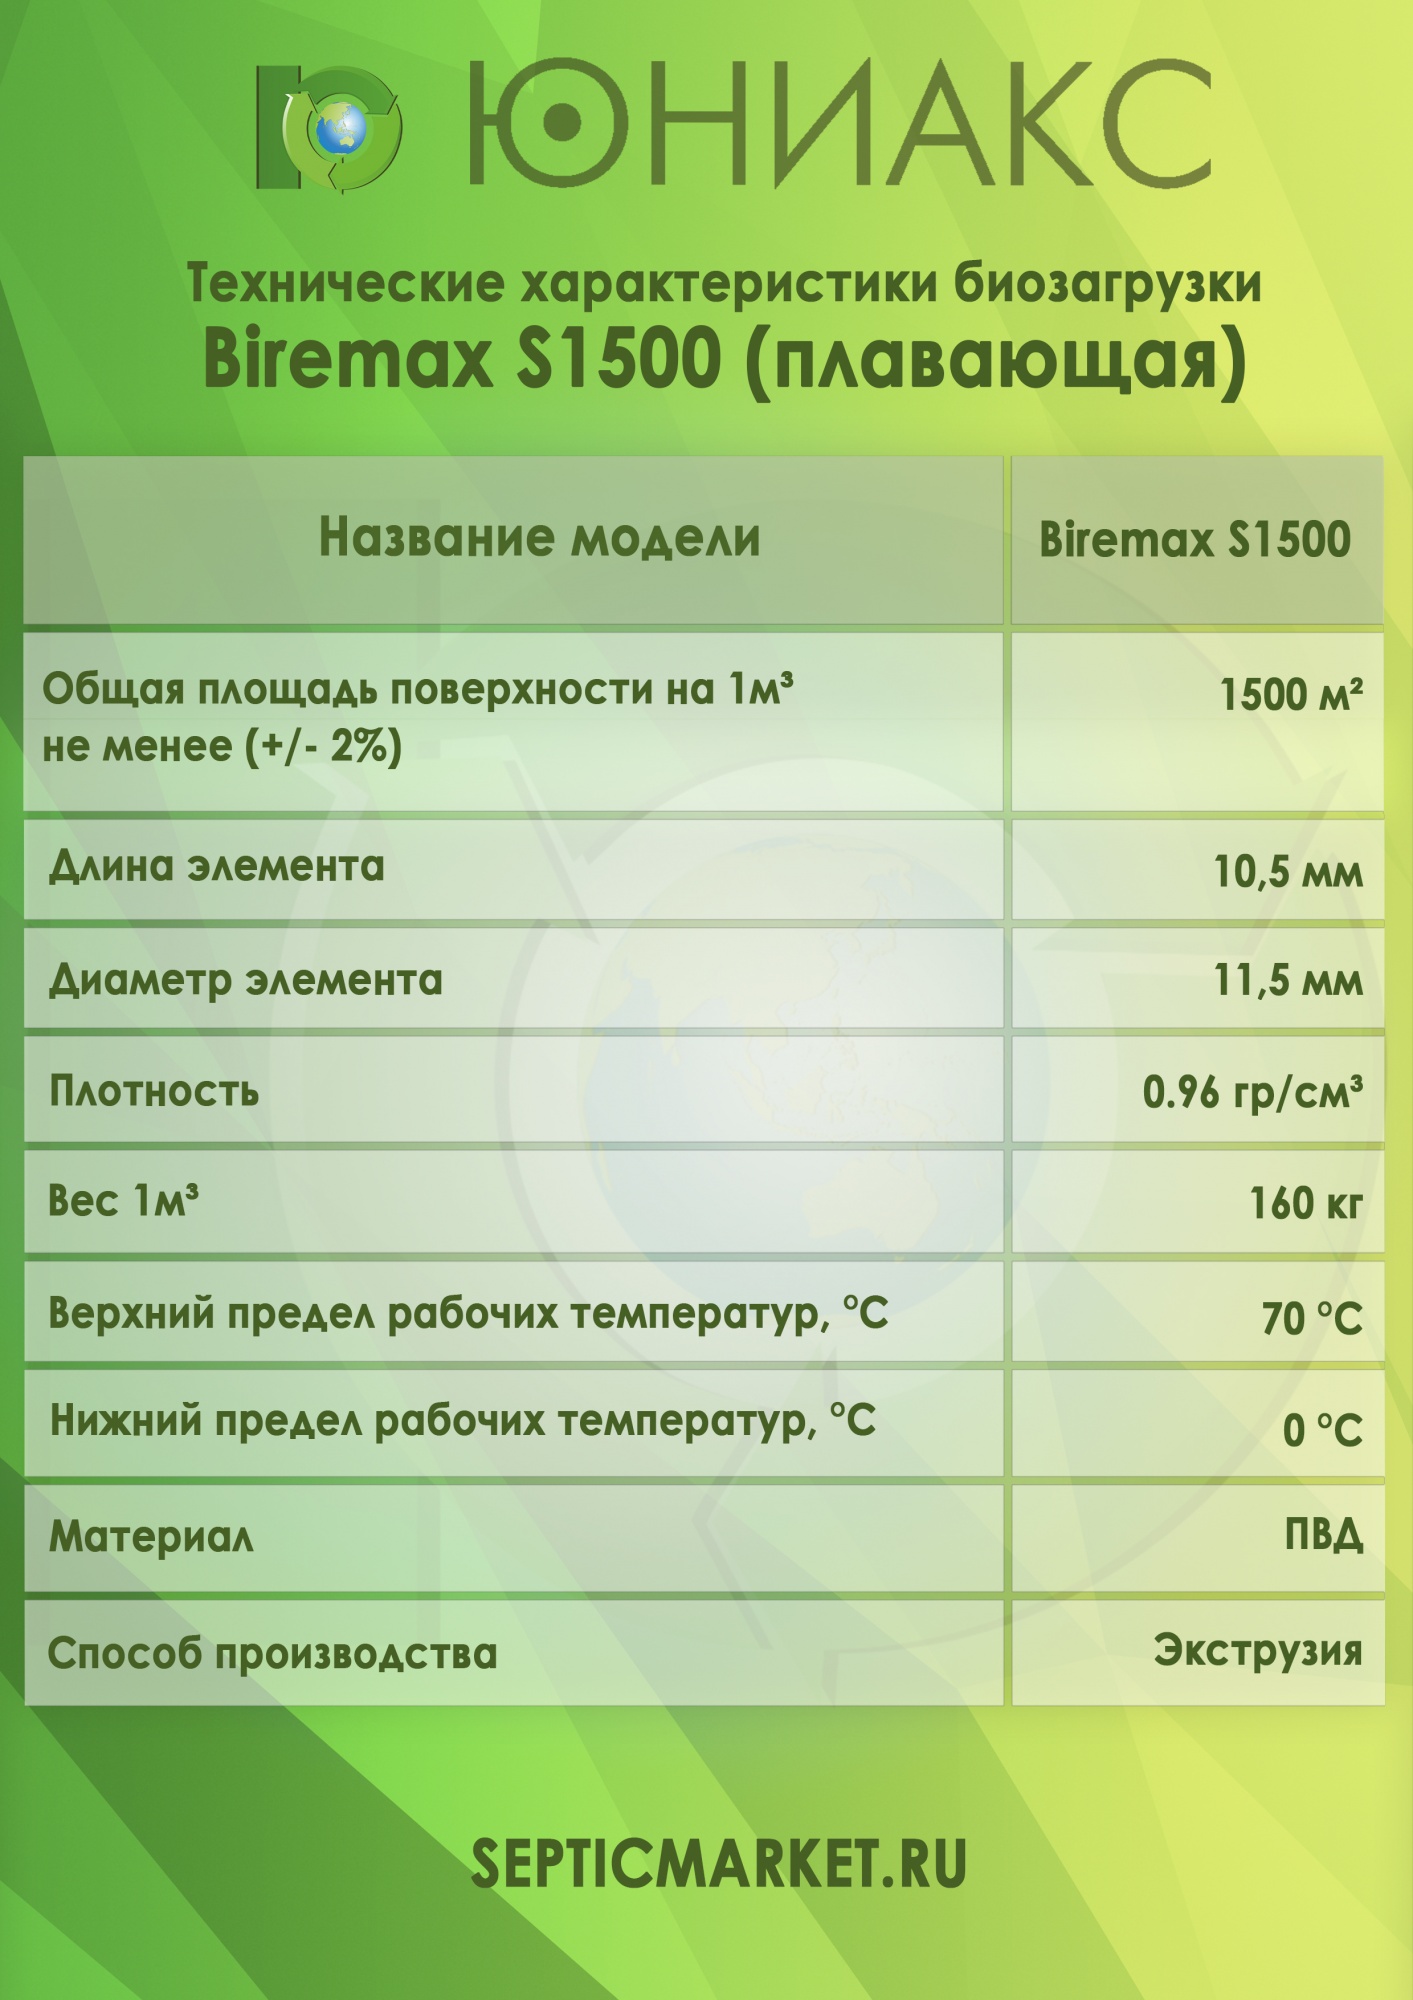 Полные характеристики плавающей биозагрузки Биремакс Эксперт S1500